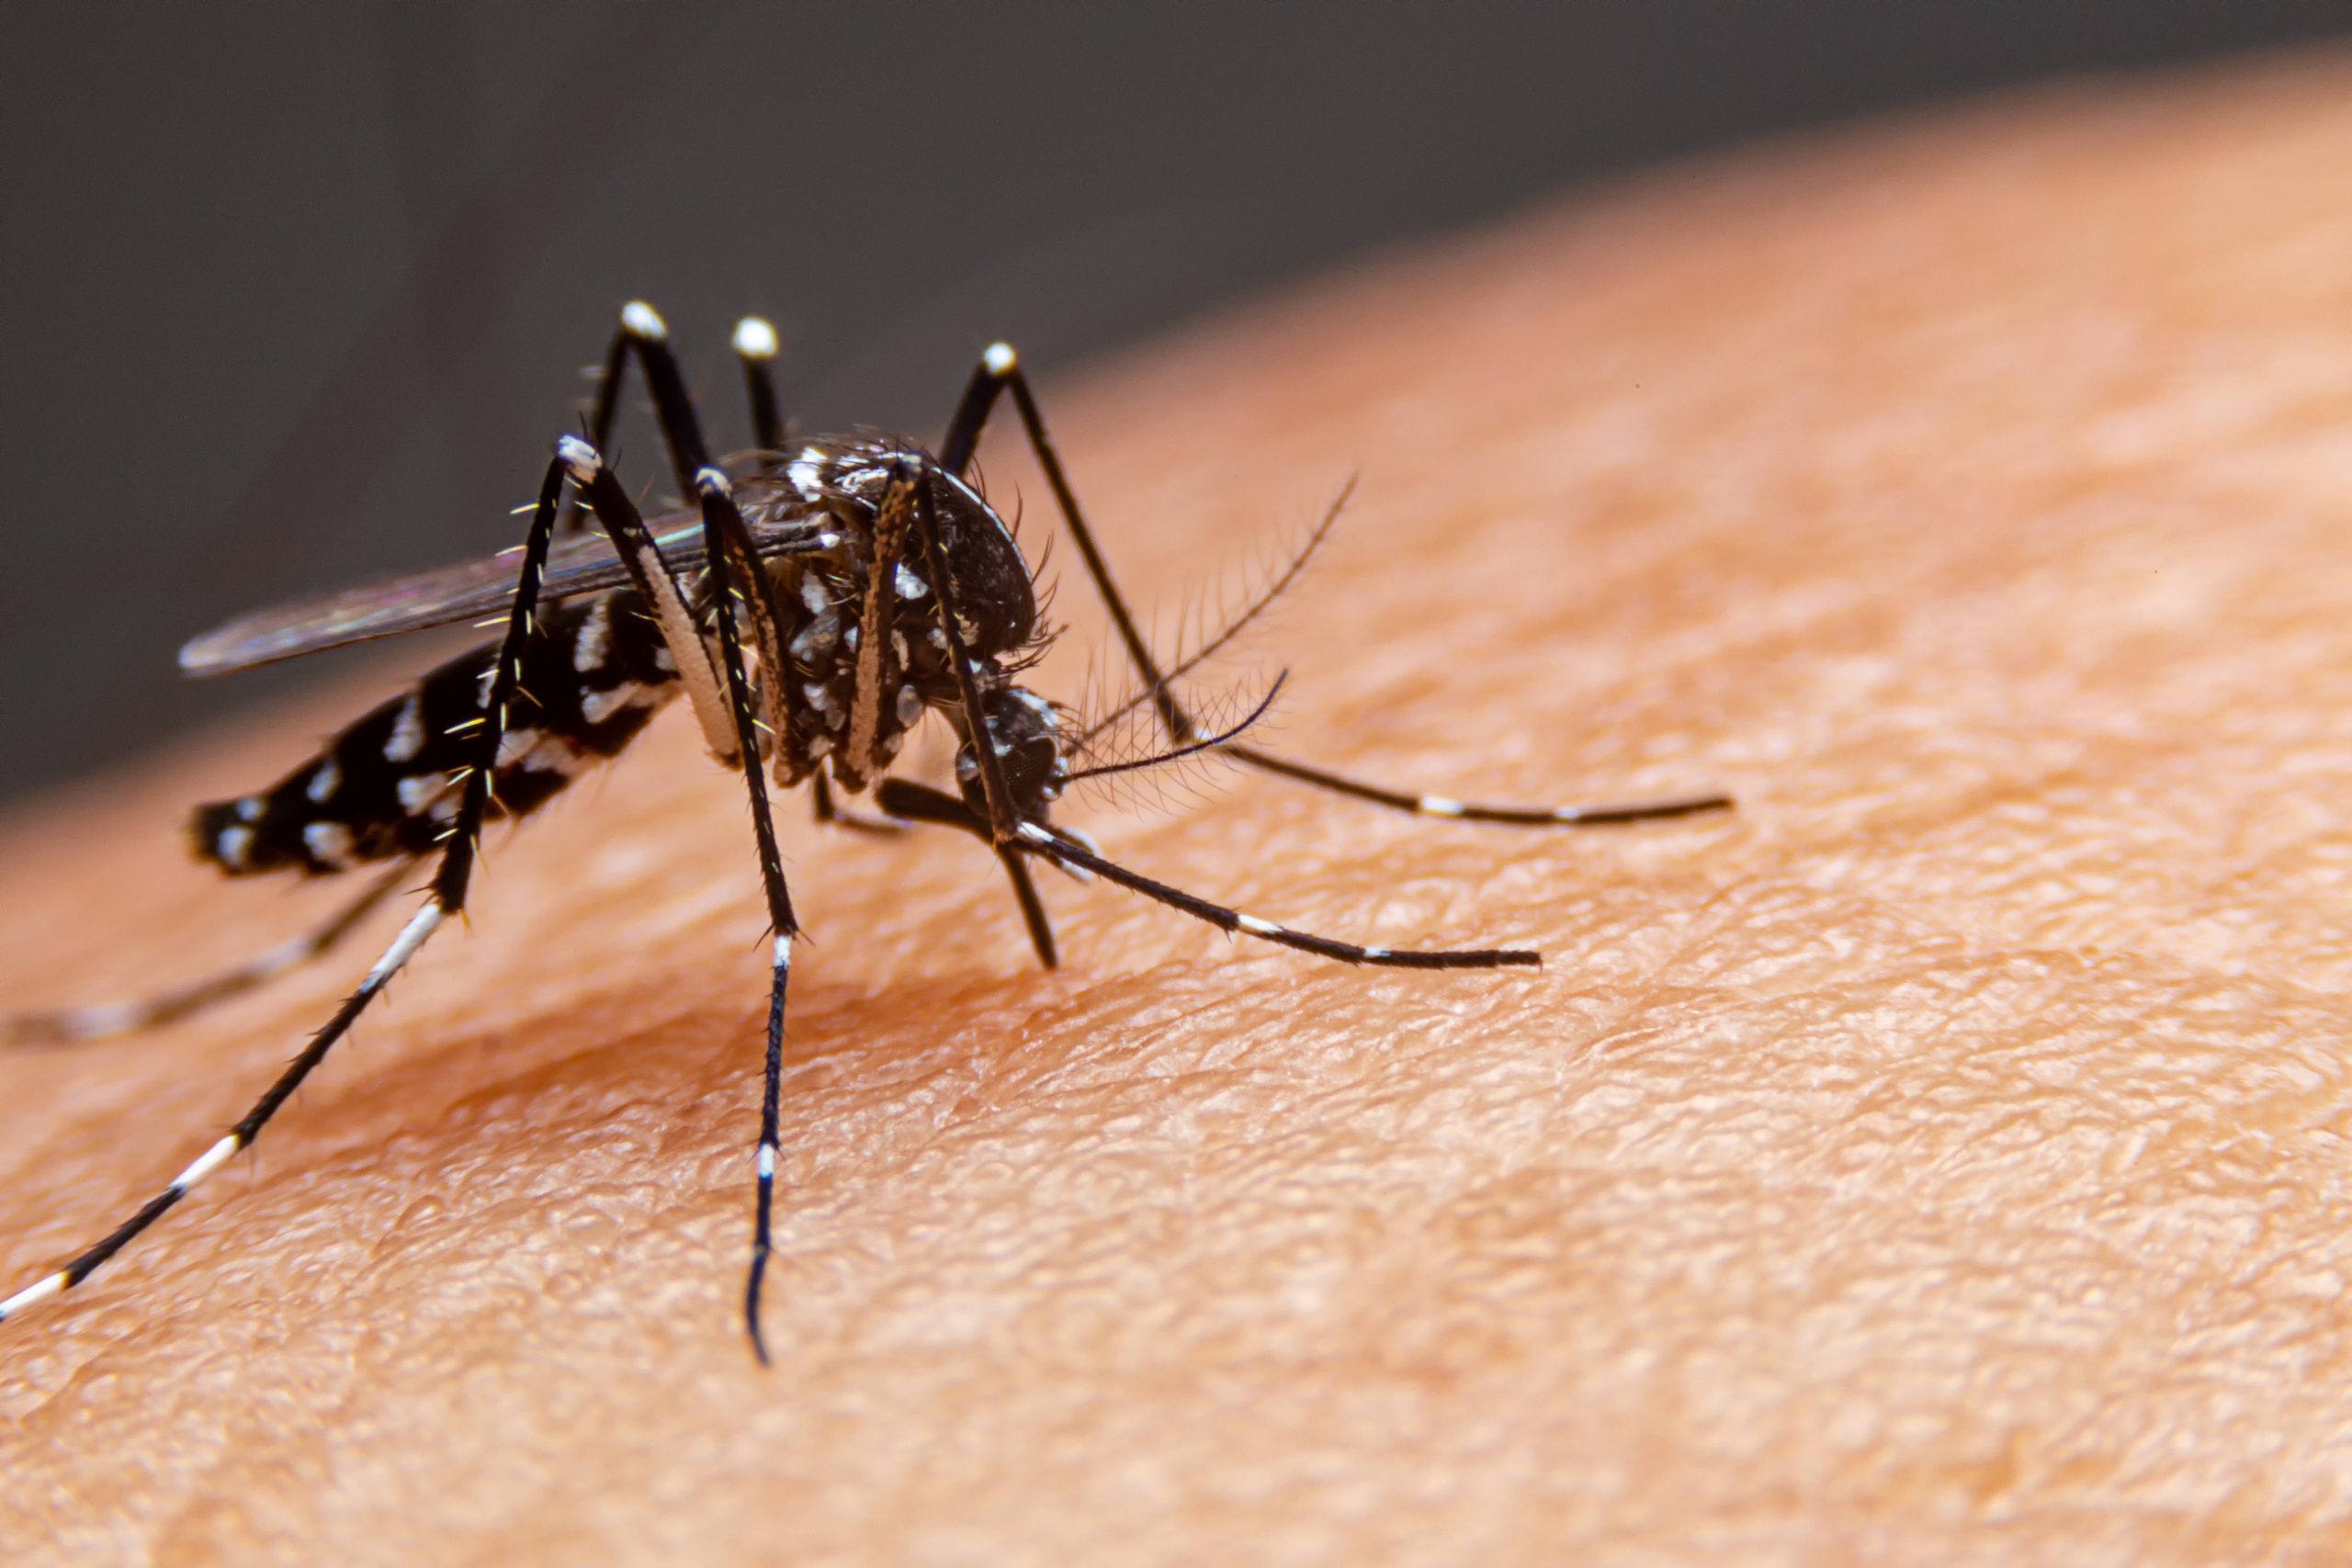 mosquito da dengue picando pessoa